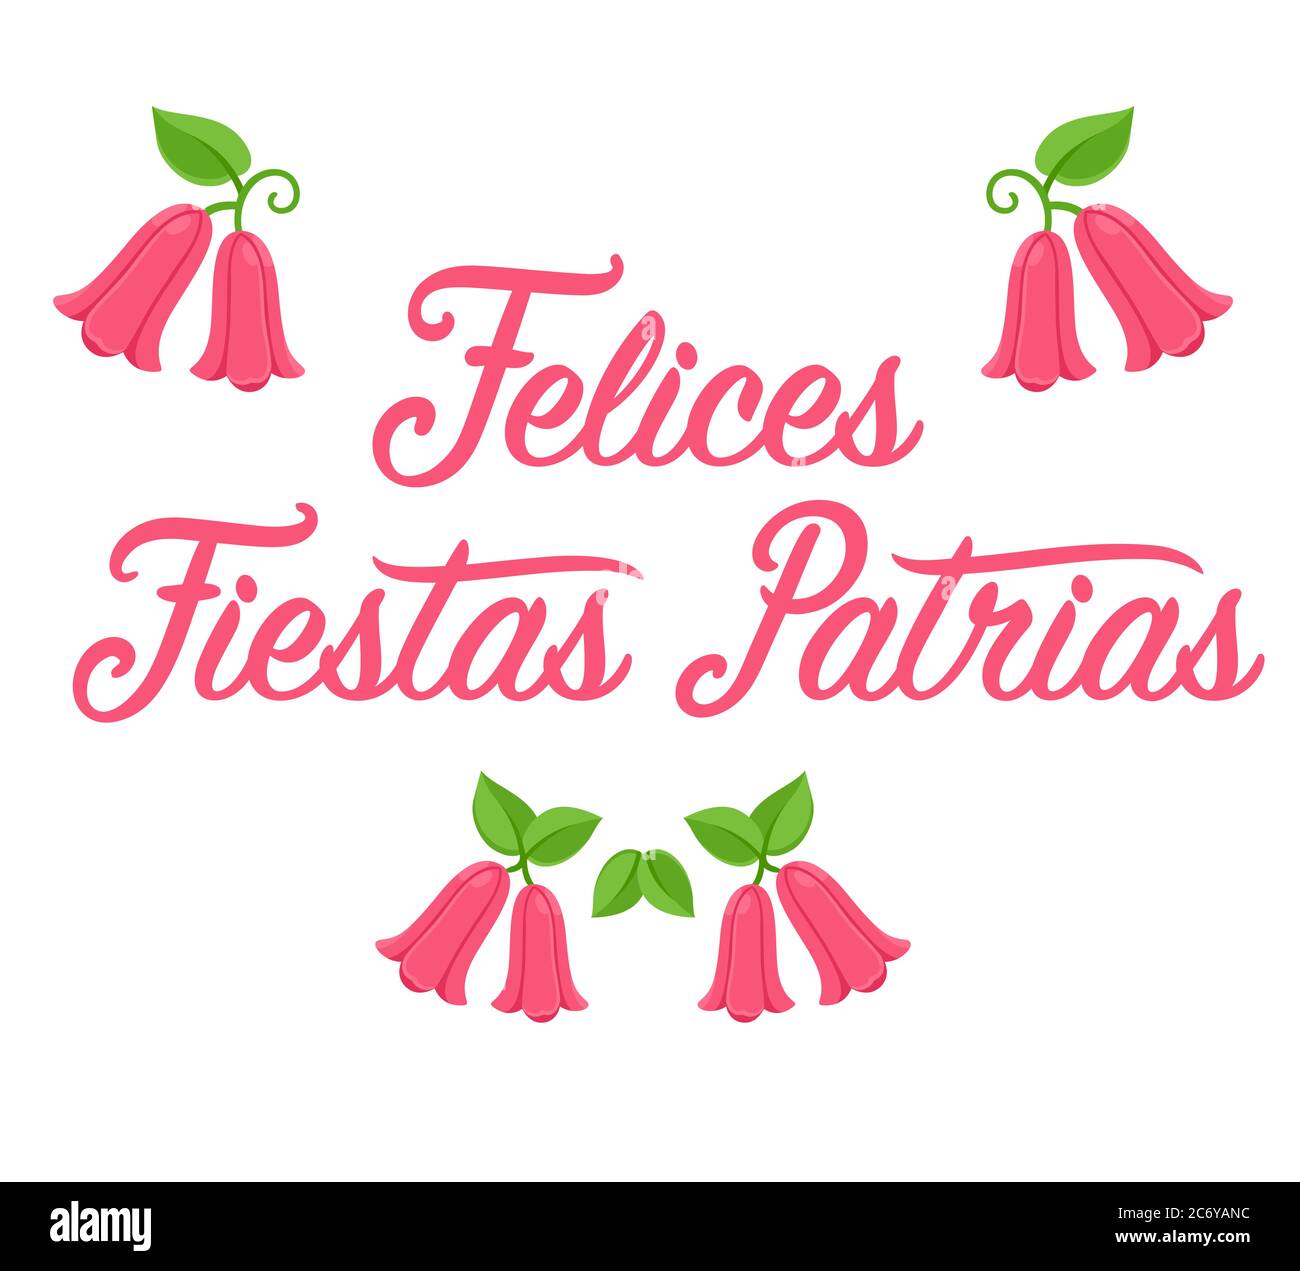 Felices Fiestas Patrias, Spanisch für Happy National Holidays. Dieciocho, Unabhängigkeitstag Chiles. Text-Schriftzug mit Copihue, chilenischer Nationalfluss Stock Vektor